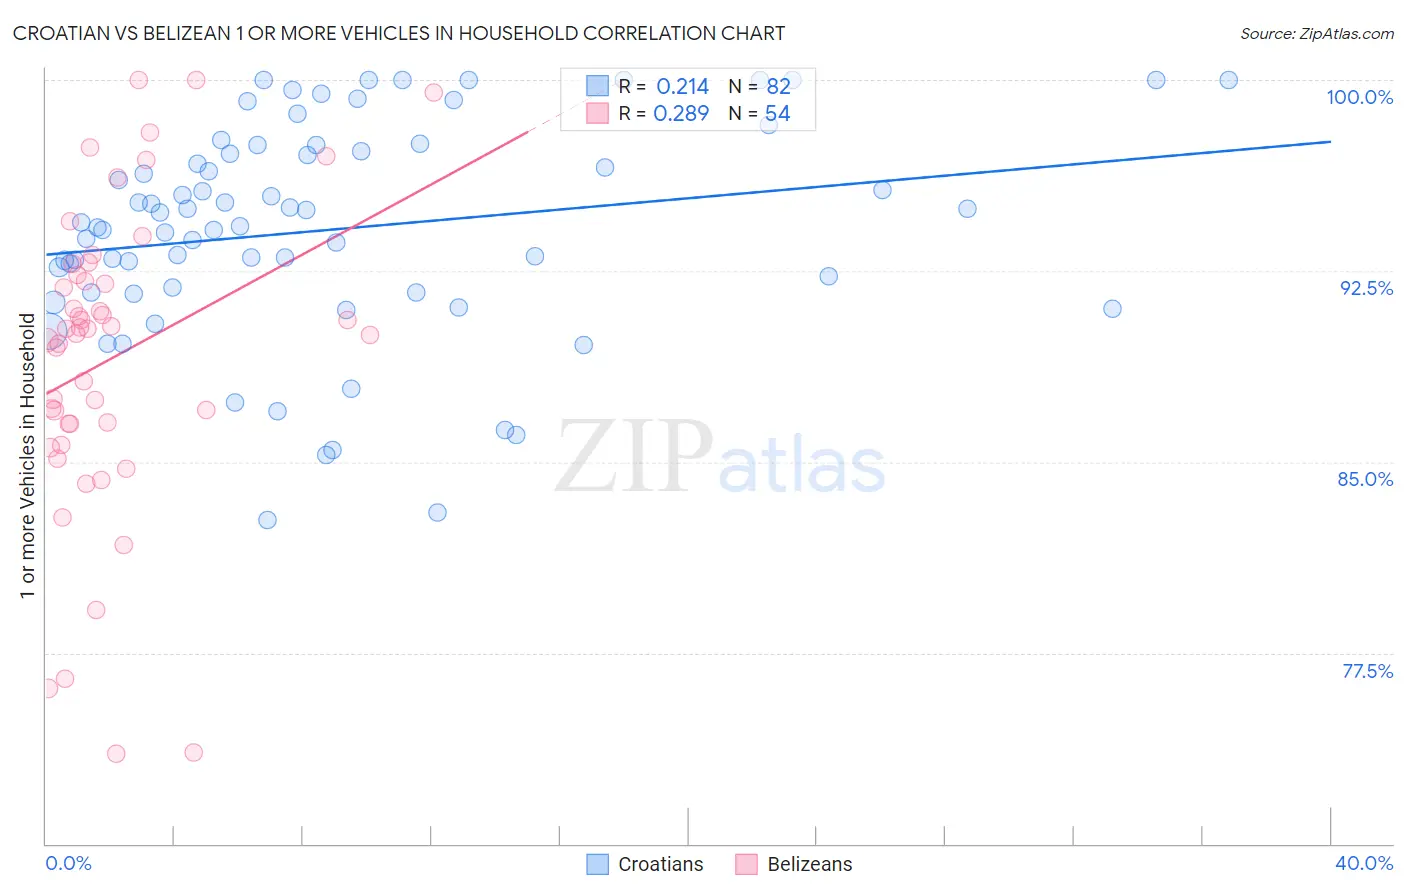 Croatian vs Belizean 1 or more Vehicles in Household